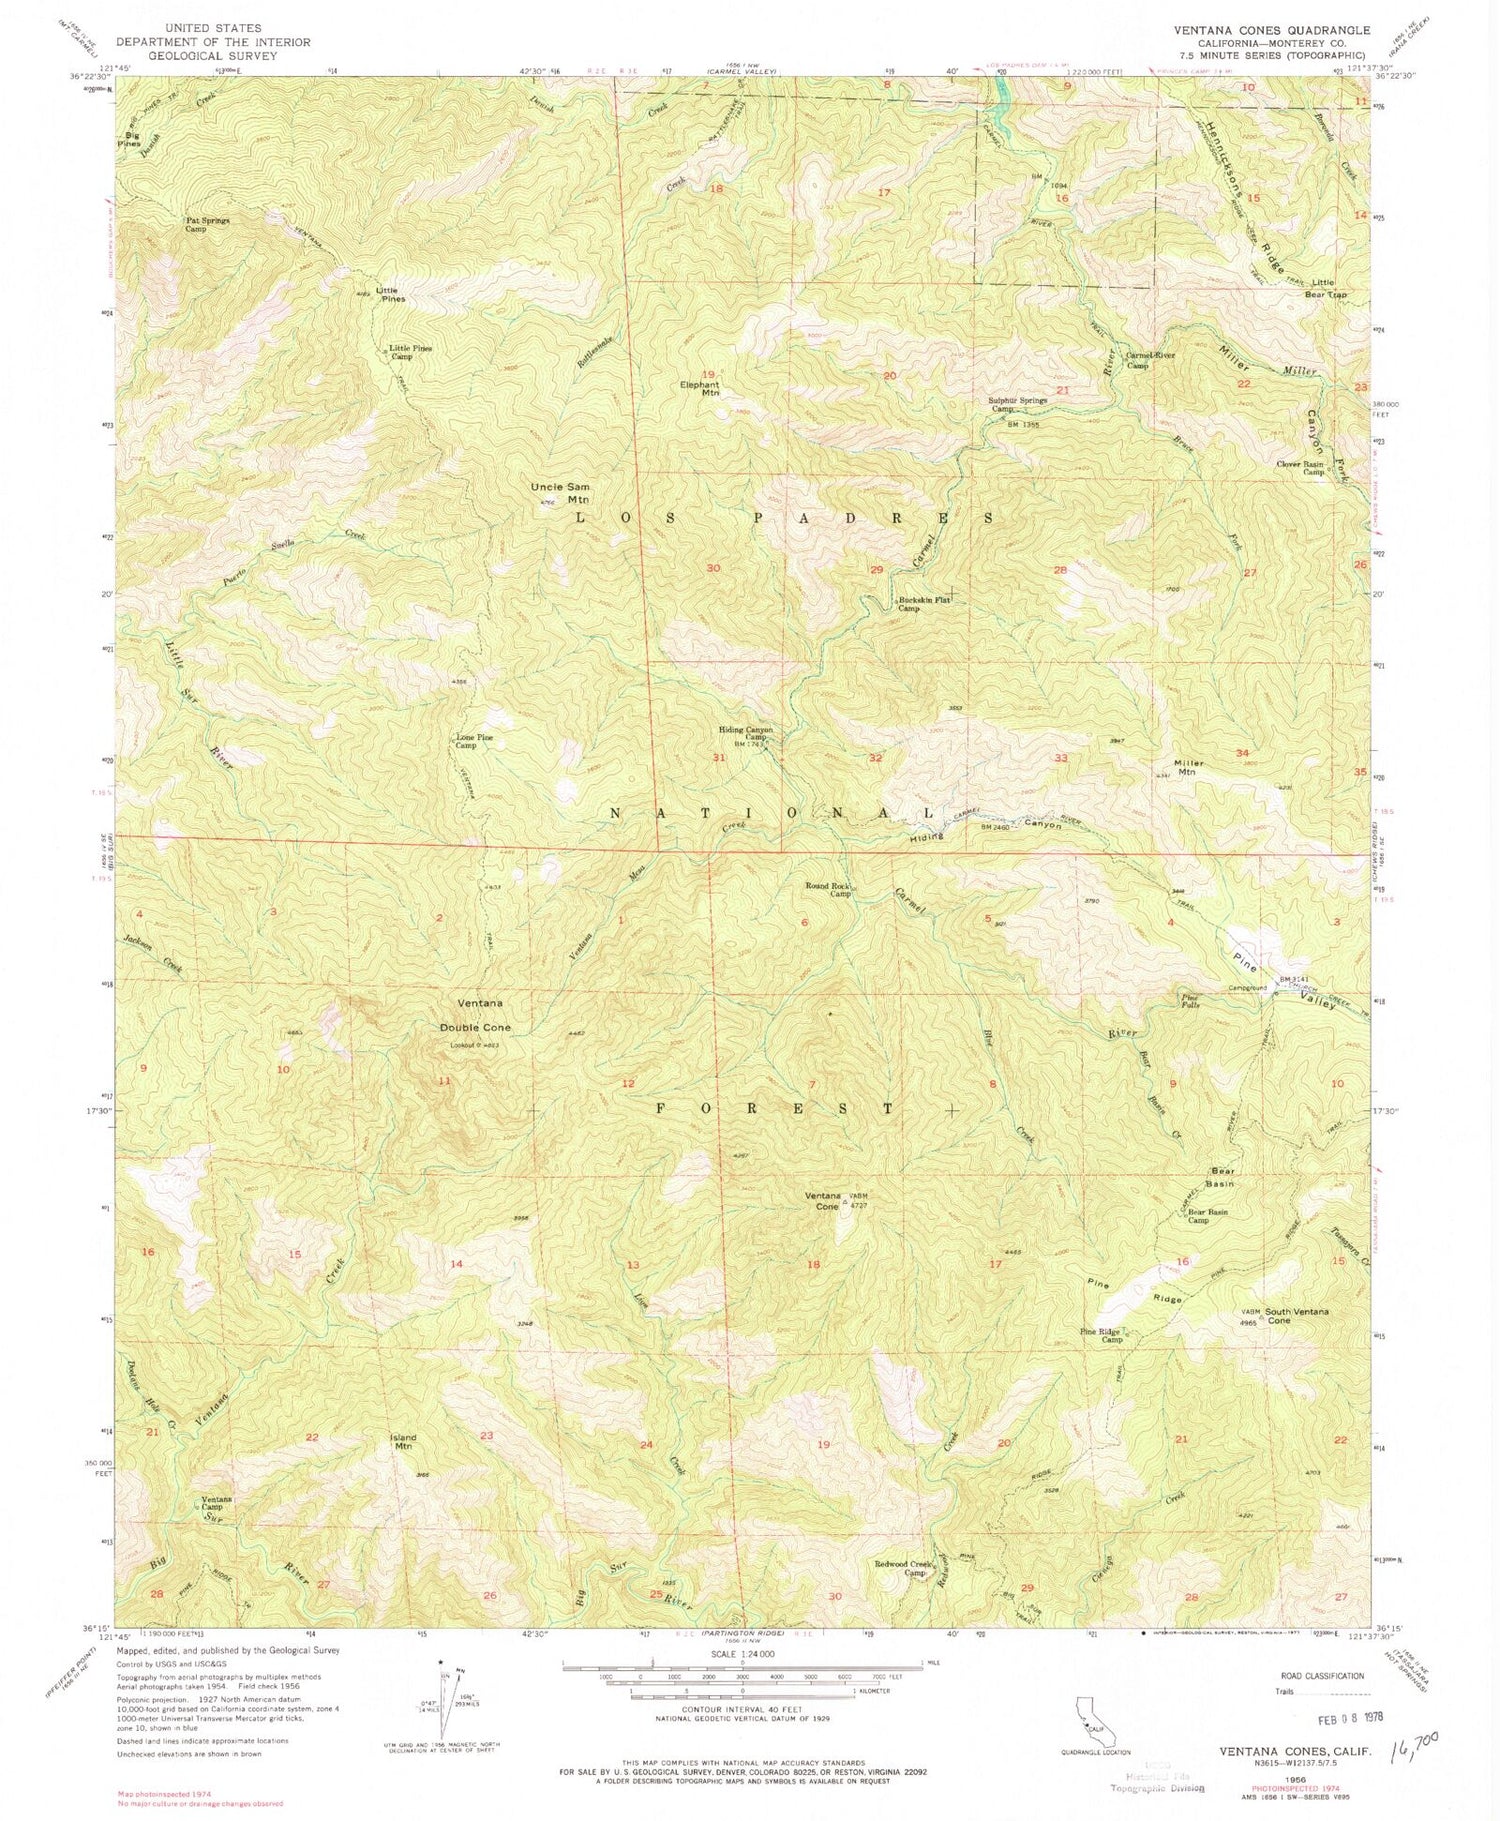 Classic USGS Ventana Cones California 7.5'x7.5' Topo Map Image